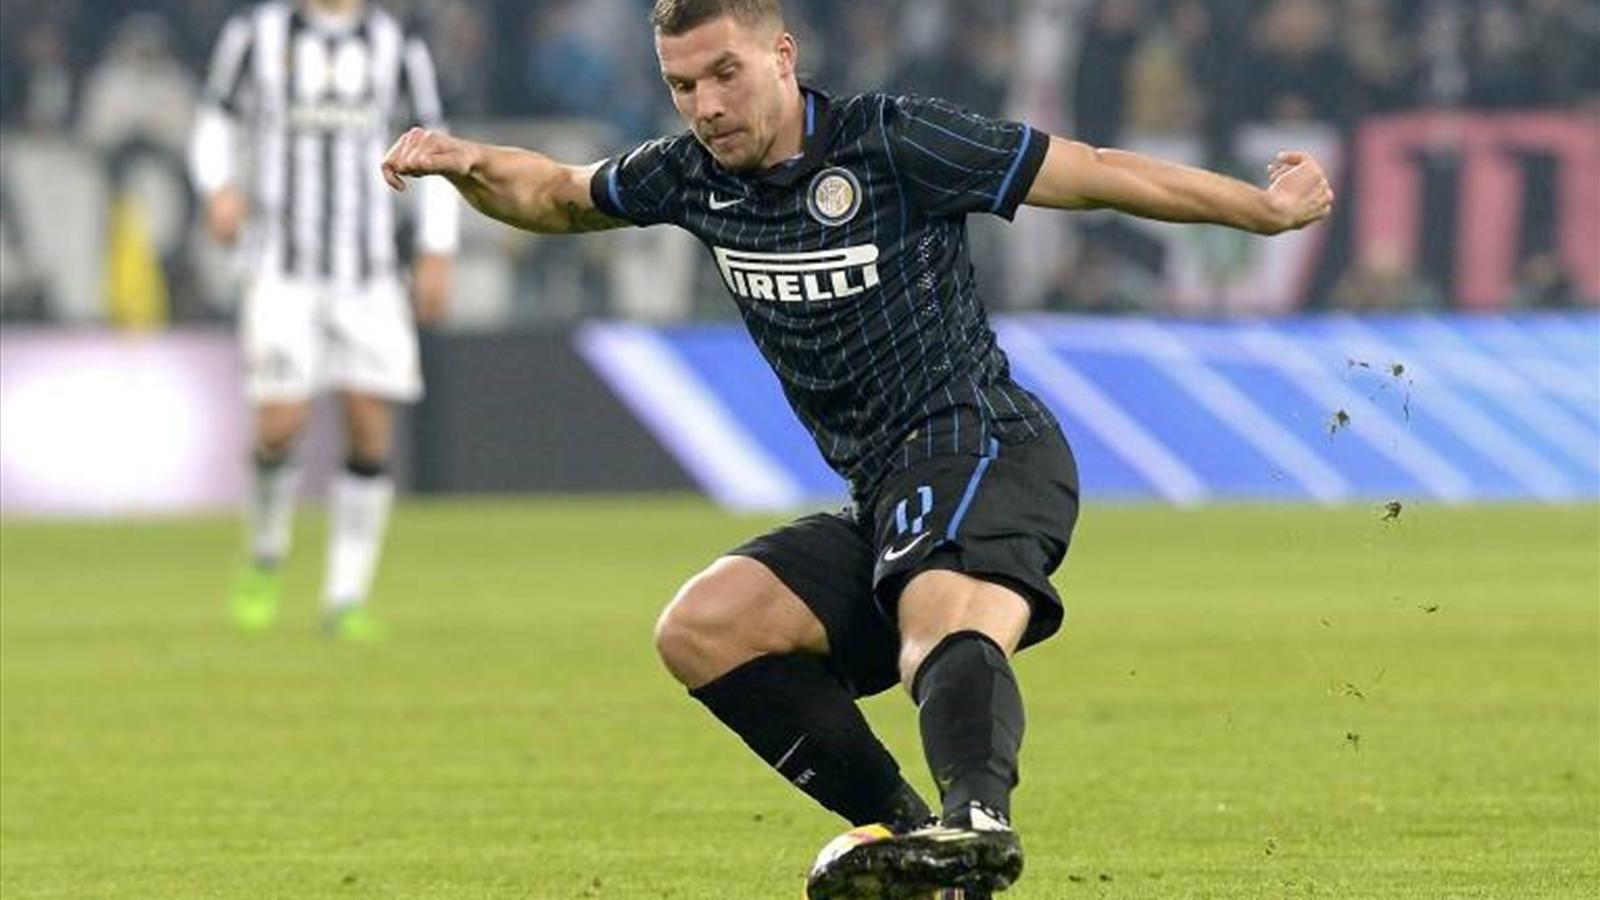 Podolski: I want to score goals